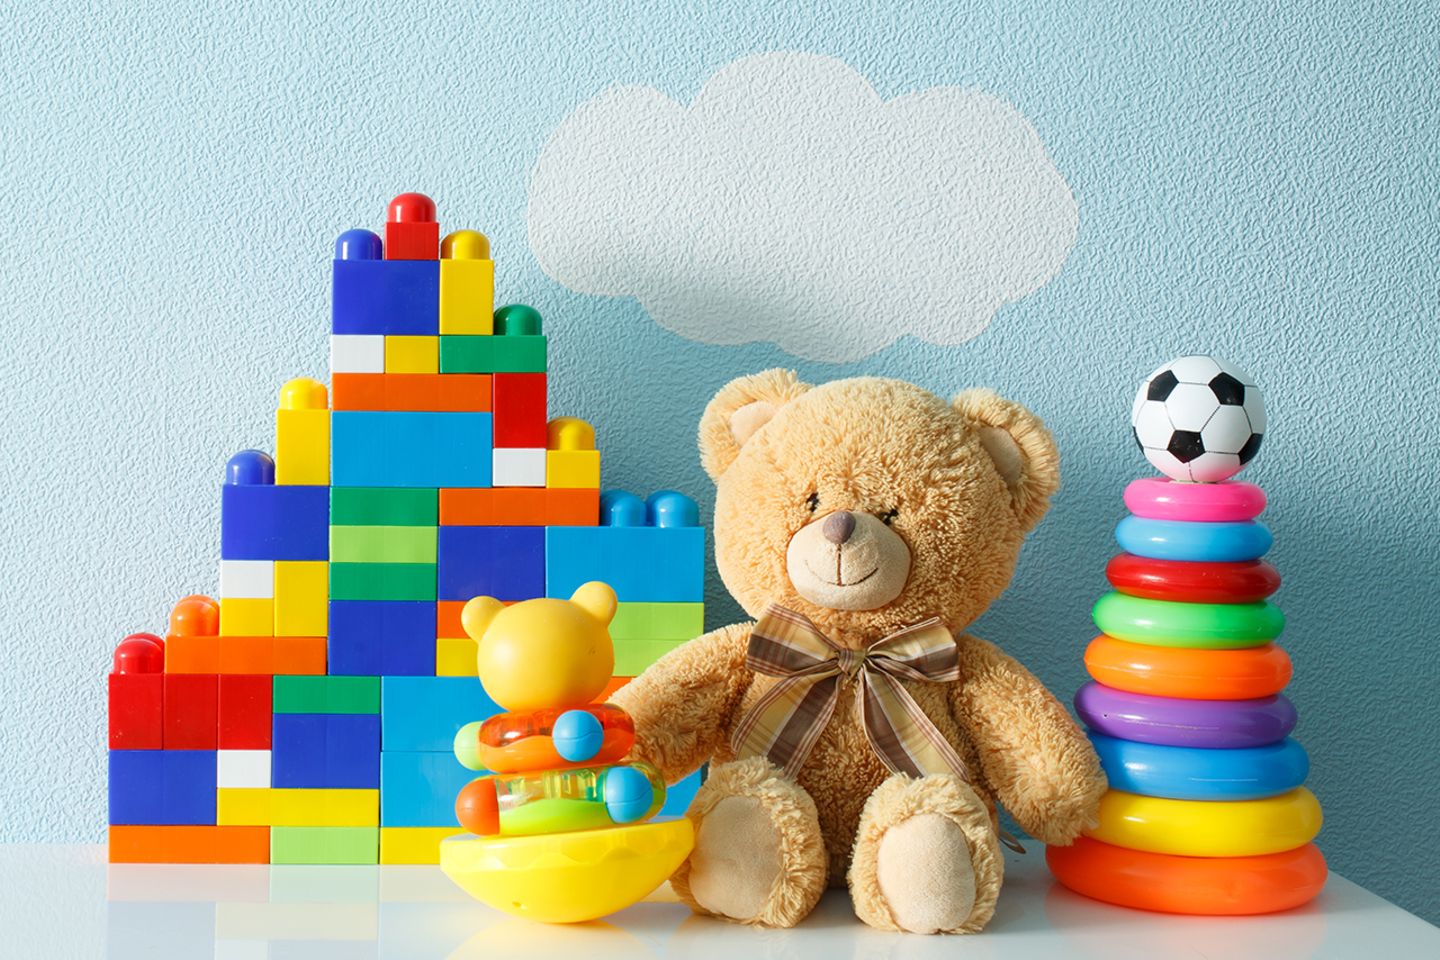 Gesundheitsstudie: Besonders Plastikspielzeug enthält eine Vielzahl an Zusatzstoffen, zum Beispiel die Industriechemikalie Bisphenol A